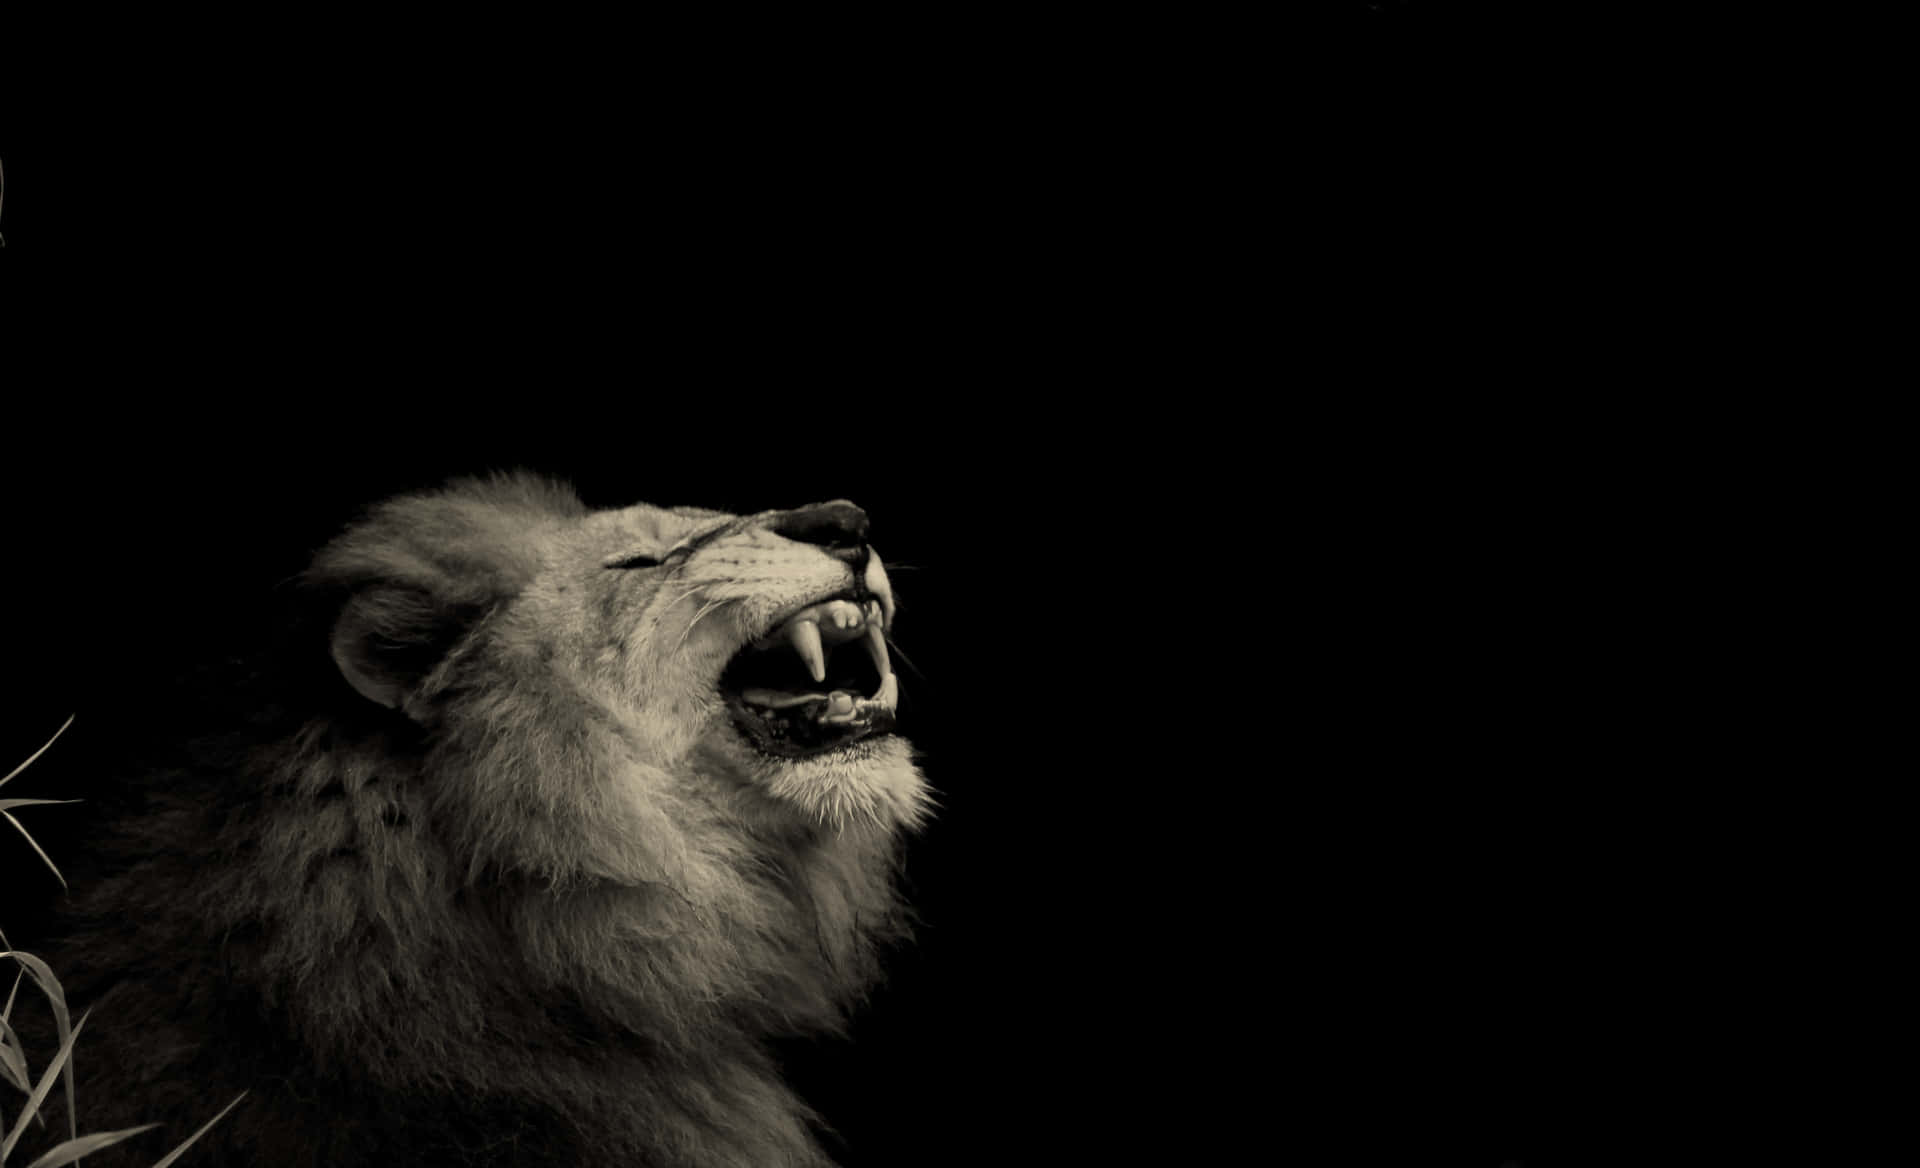 "Power in Its Roar - A Roaring Lion" Wallpaper